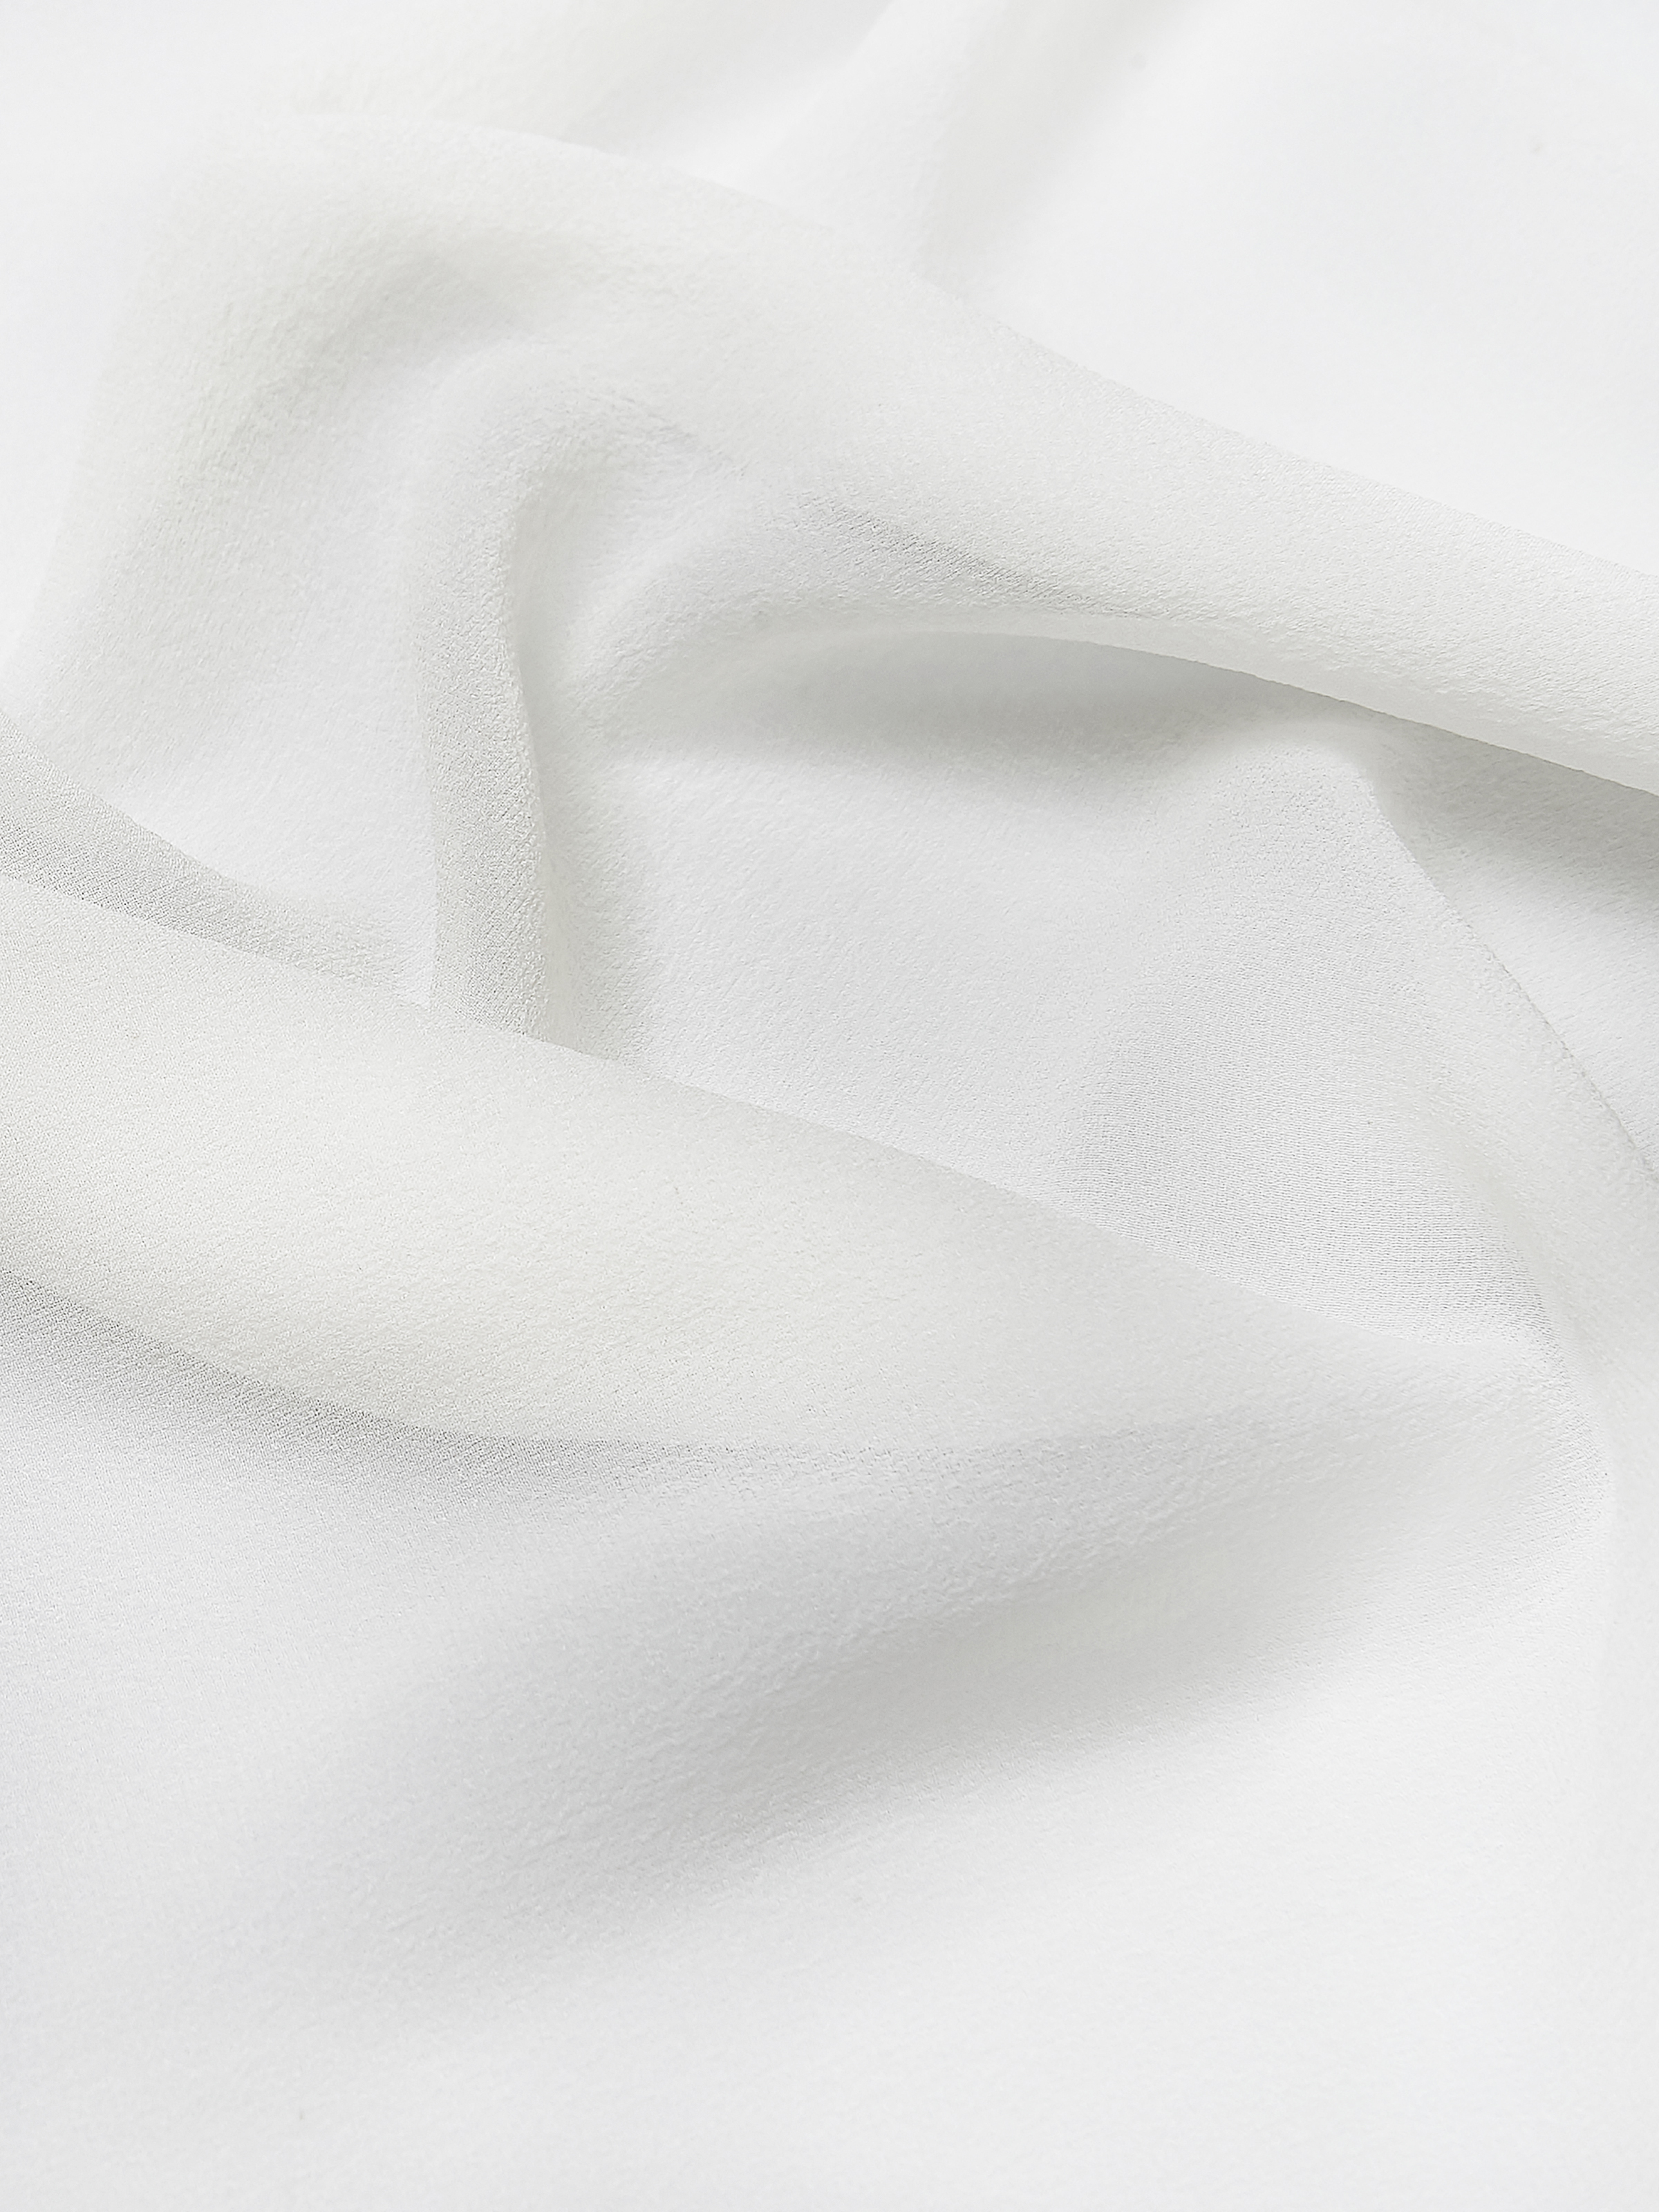 картинка Платок белый 43*43 см магазина шелковой одежды и аксессуаров